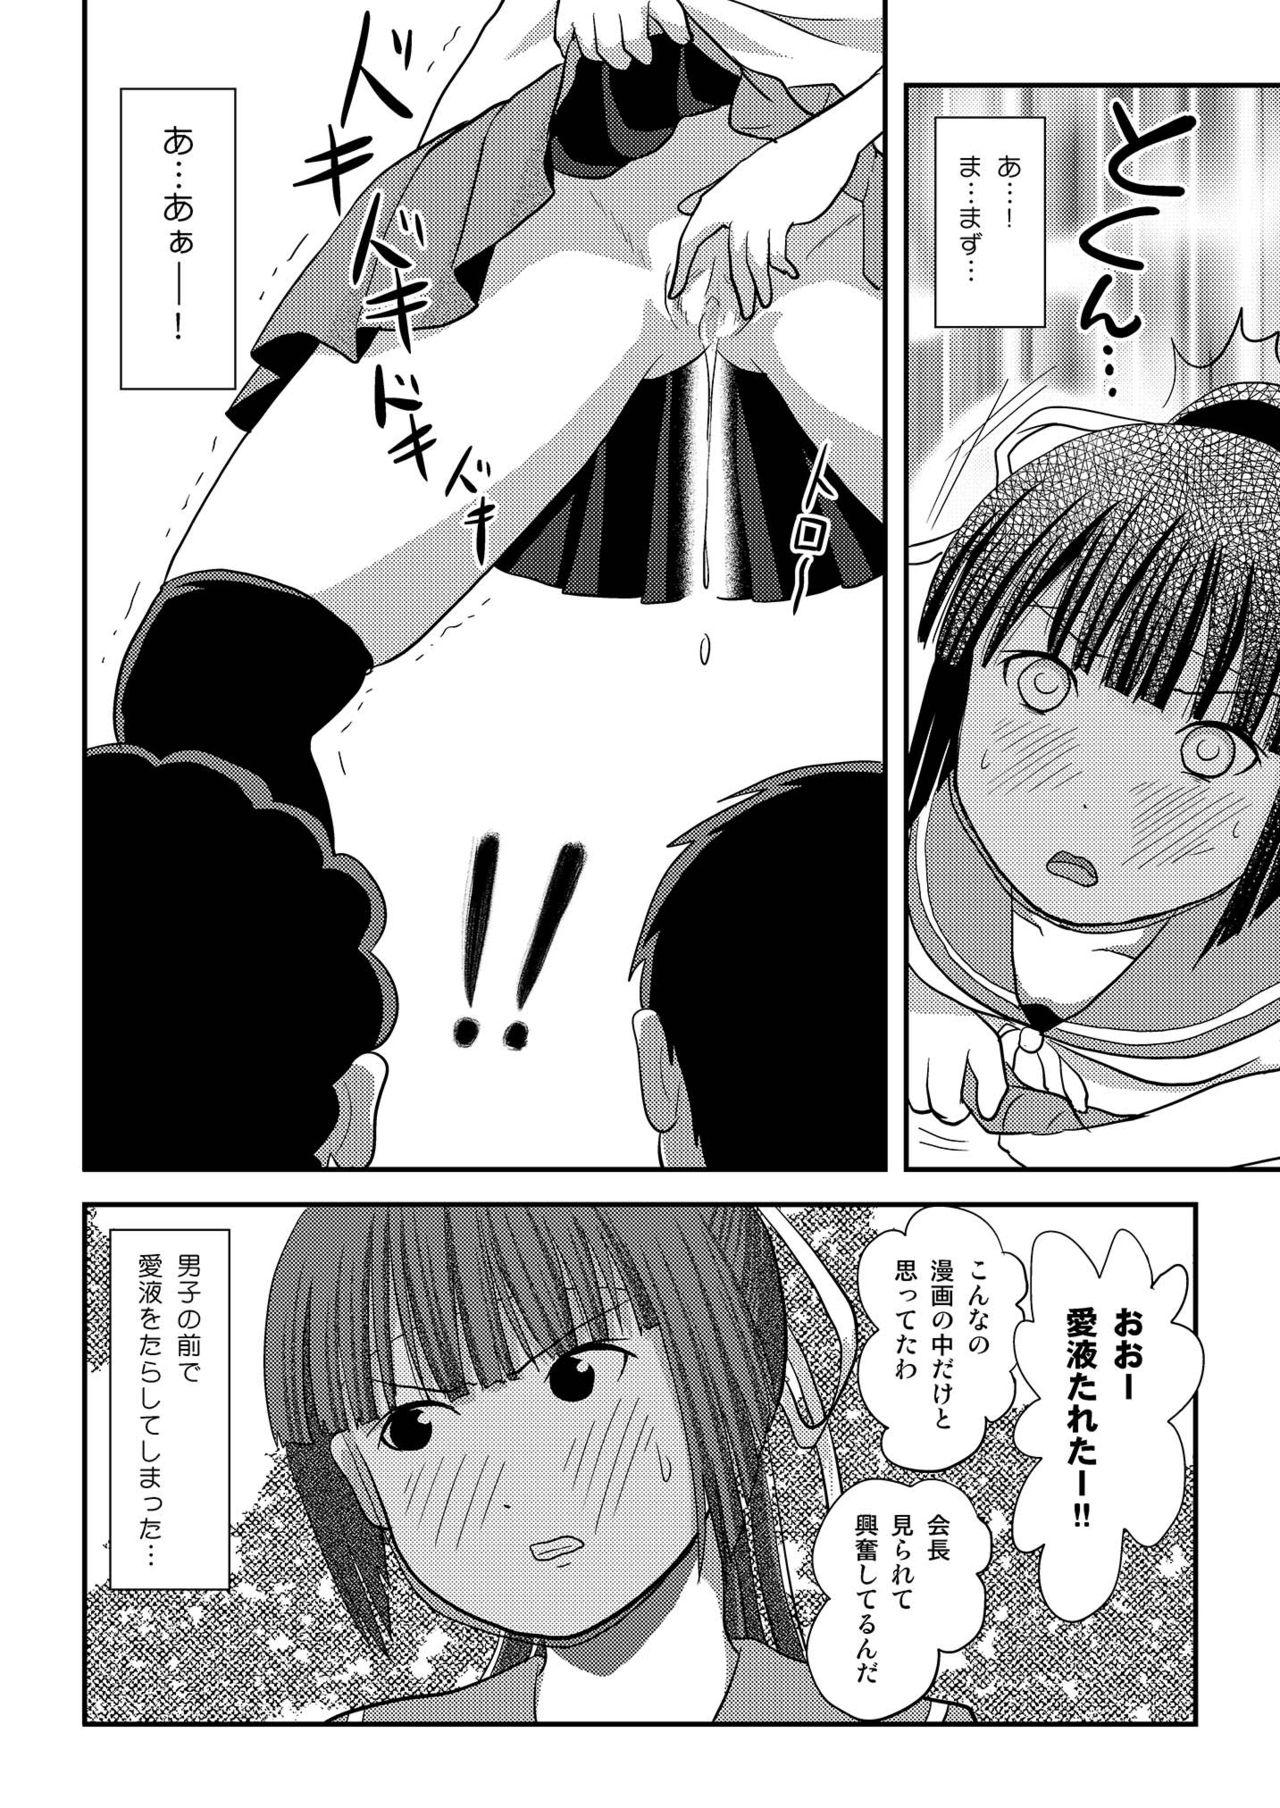 Small Tits Sakura Kotaka no Roshutsubiyori 7 - Original Maid - Page 8